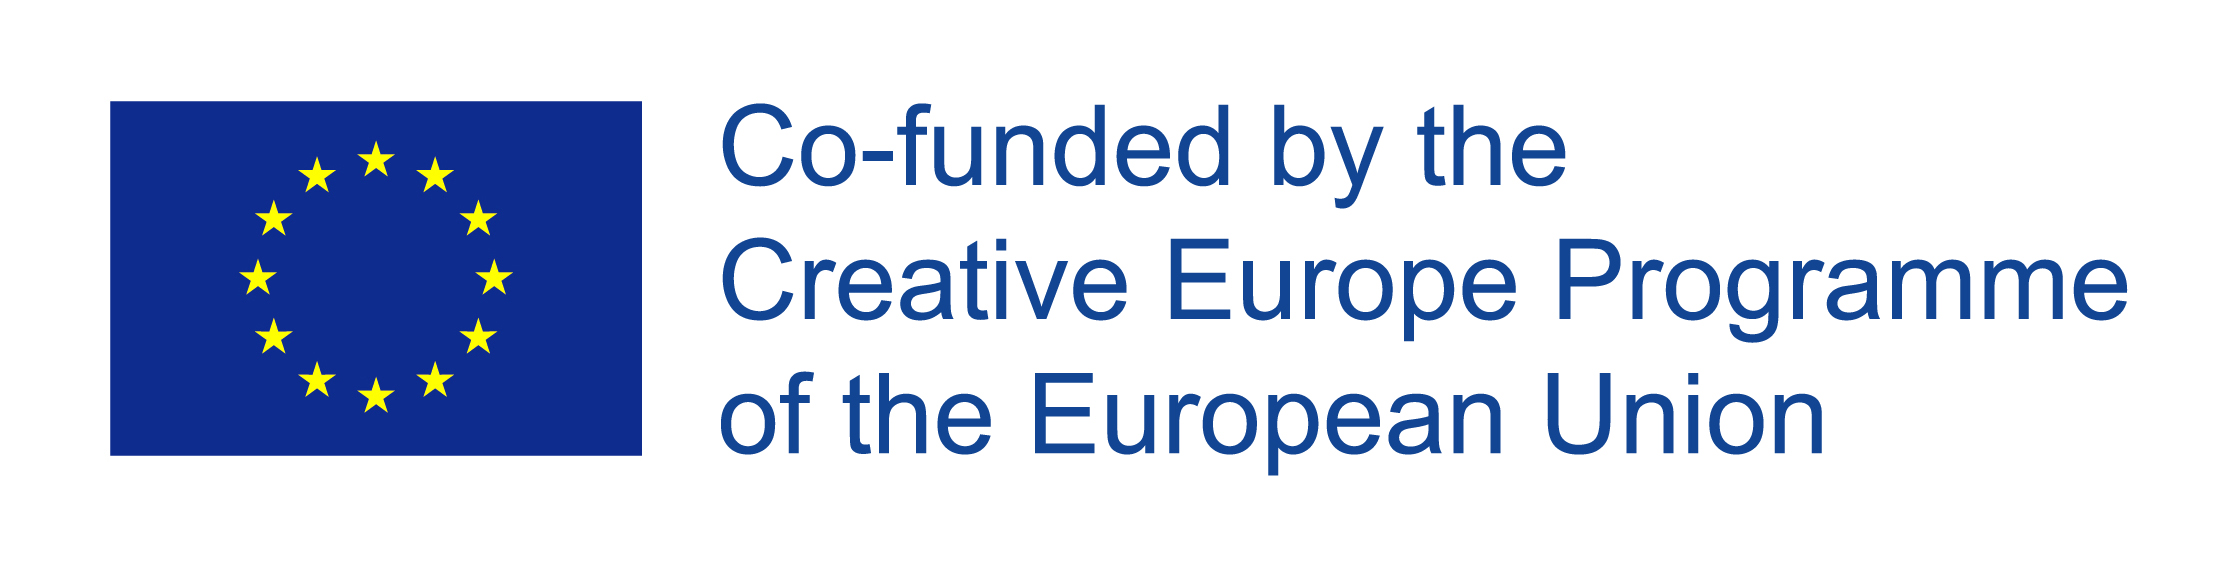 Creative Europe Culture